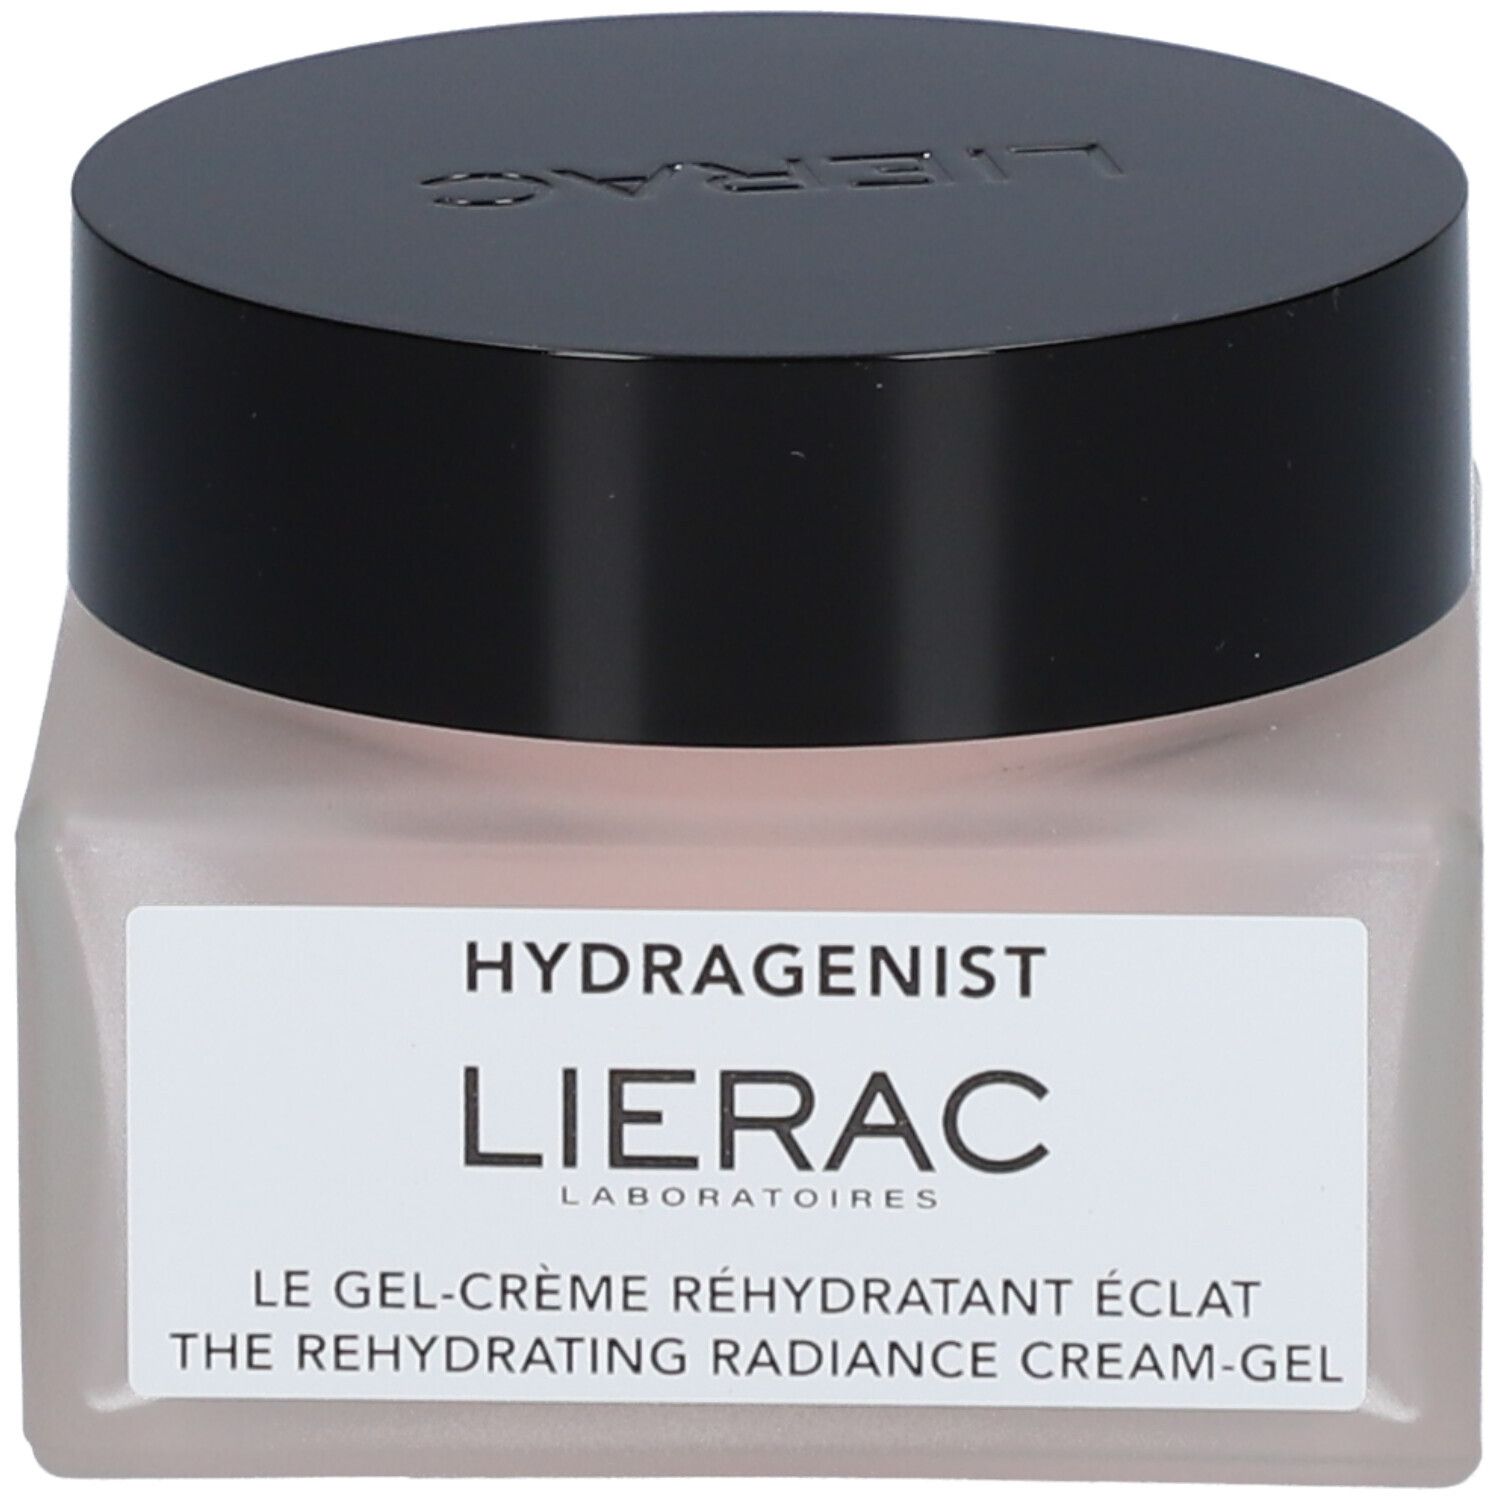 Lierac Hydragenist Le Gel-crème réhydratant éclat